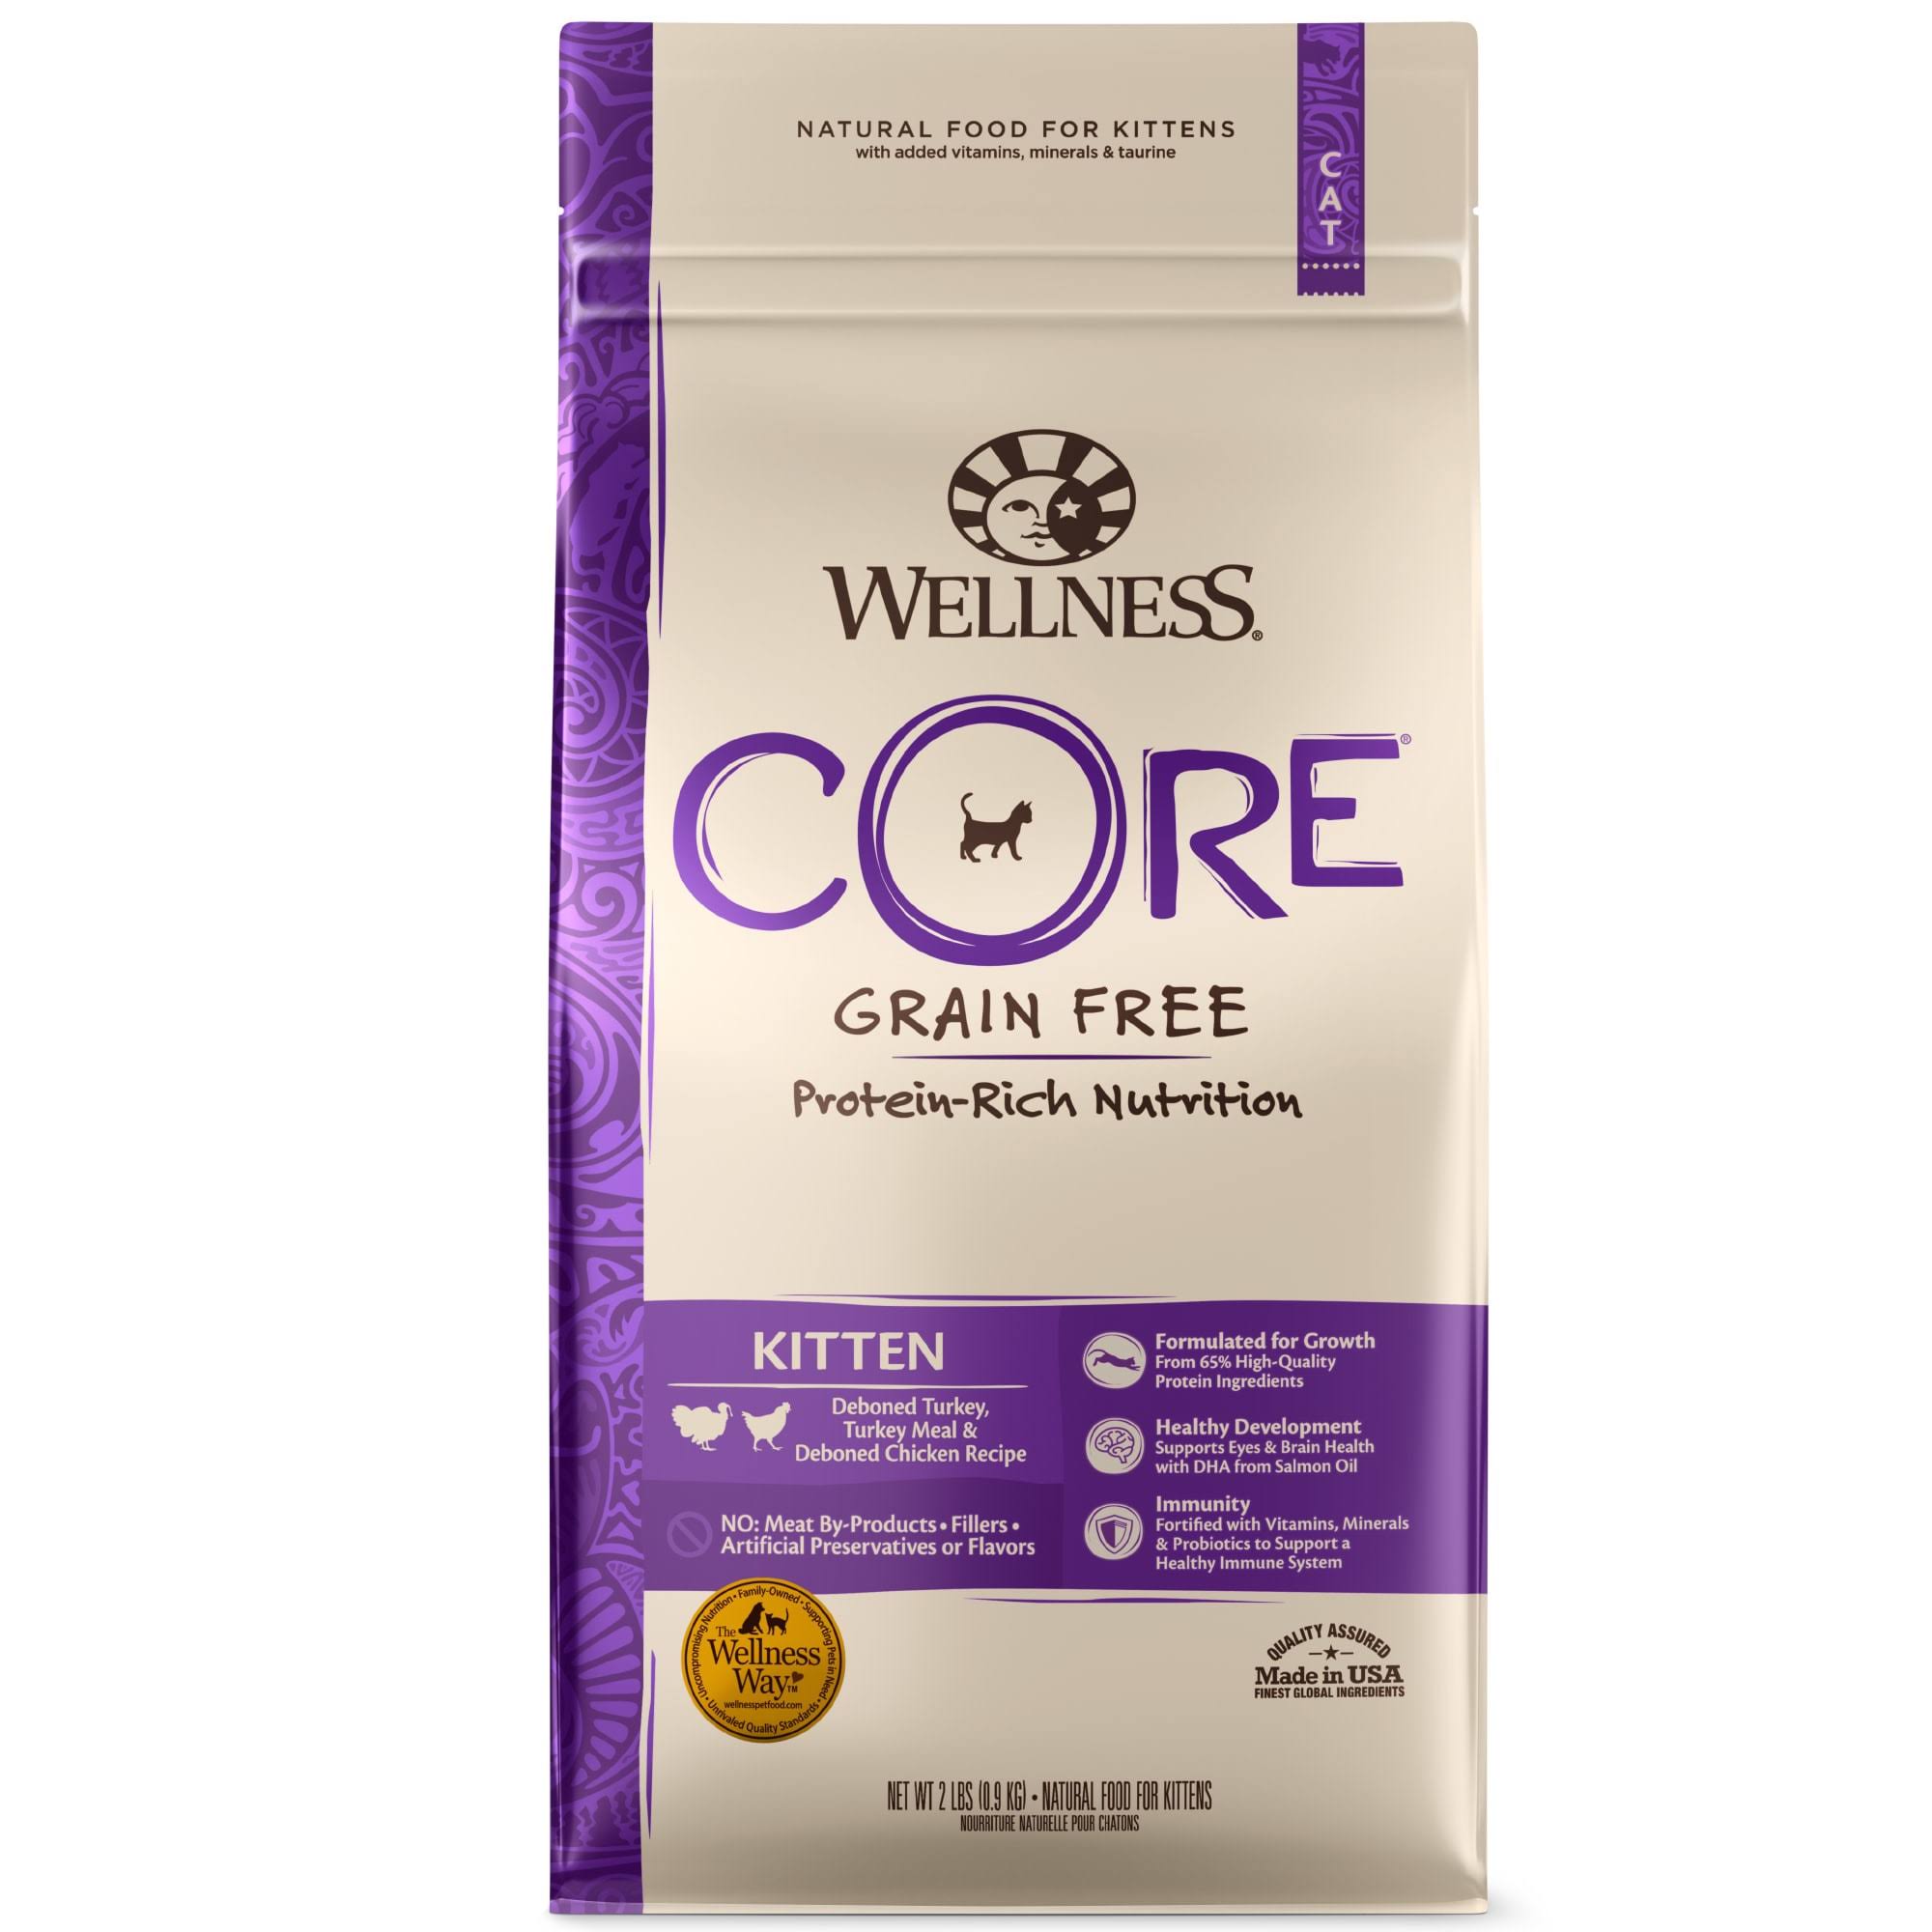 Wellpet Wellness Core Grain Free Pet Food - Kitten Formula, 2lbs